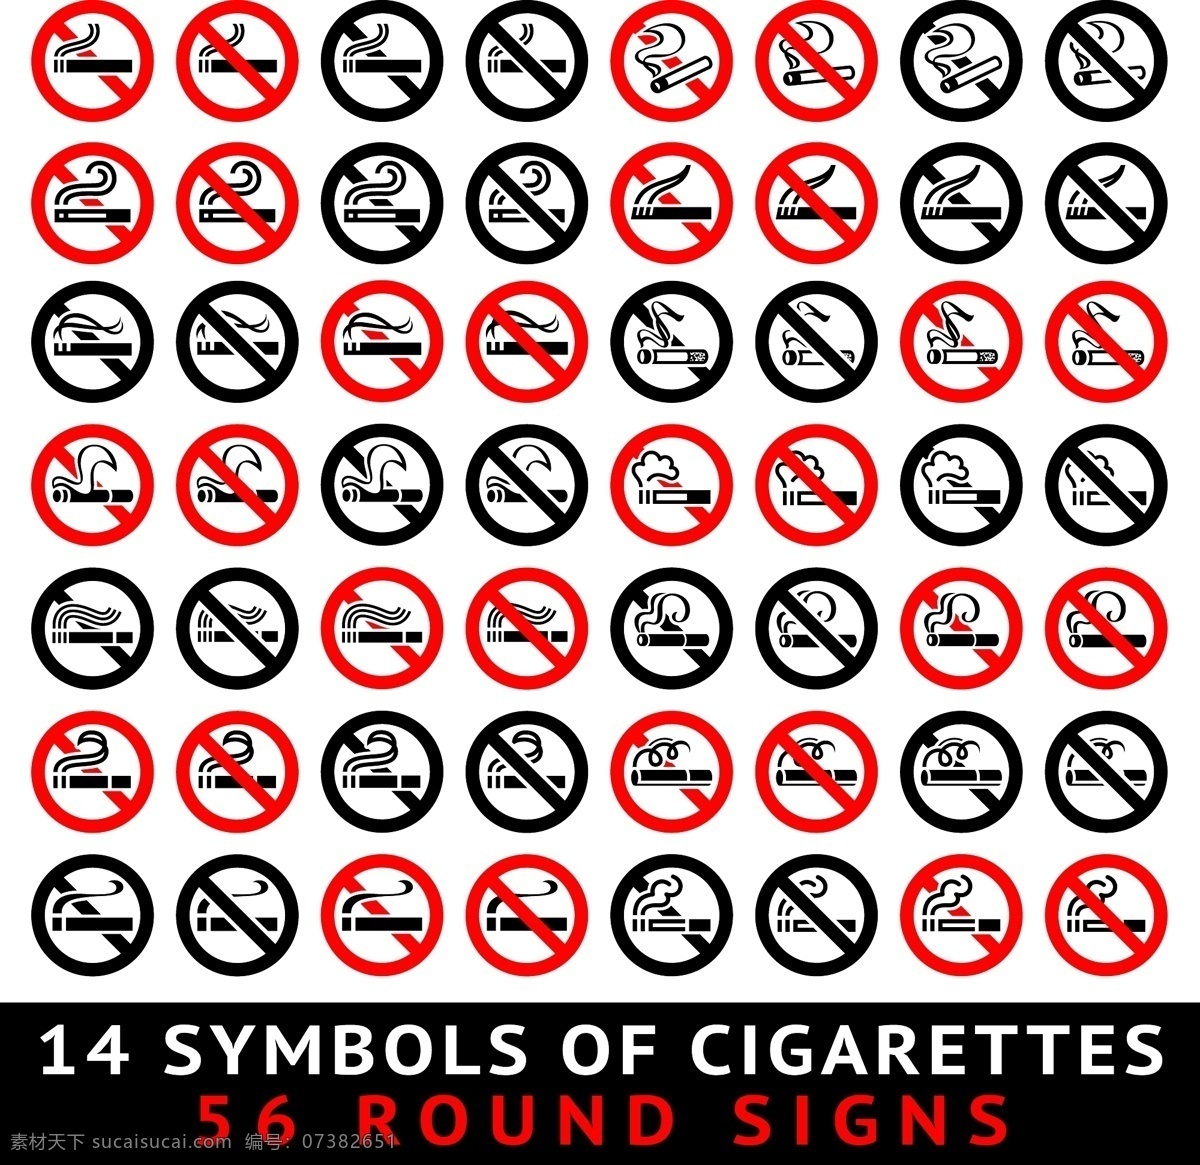 禁止吸烟标志 香烟 吸烟 抽烟 香烟广告 香烟创意 广告 香烟教育 手绘 公共标识标志 标识标志图标 矢量